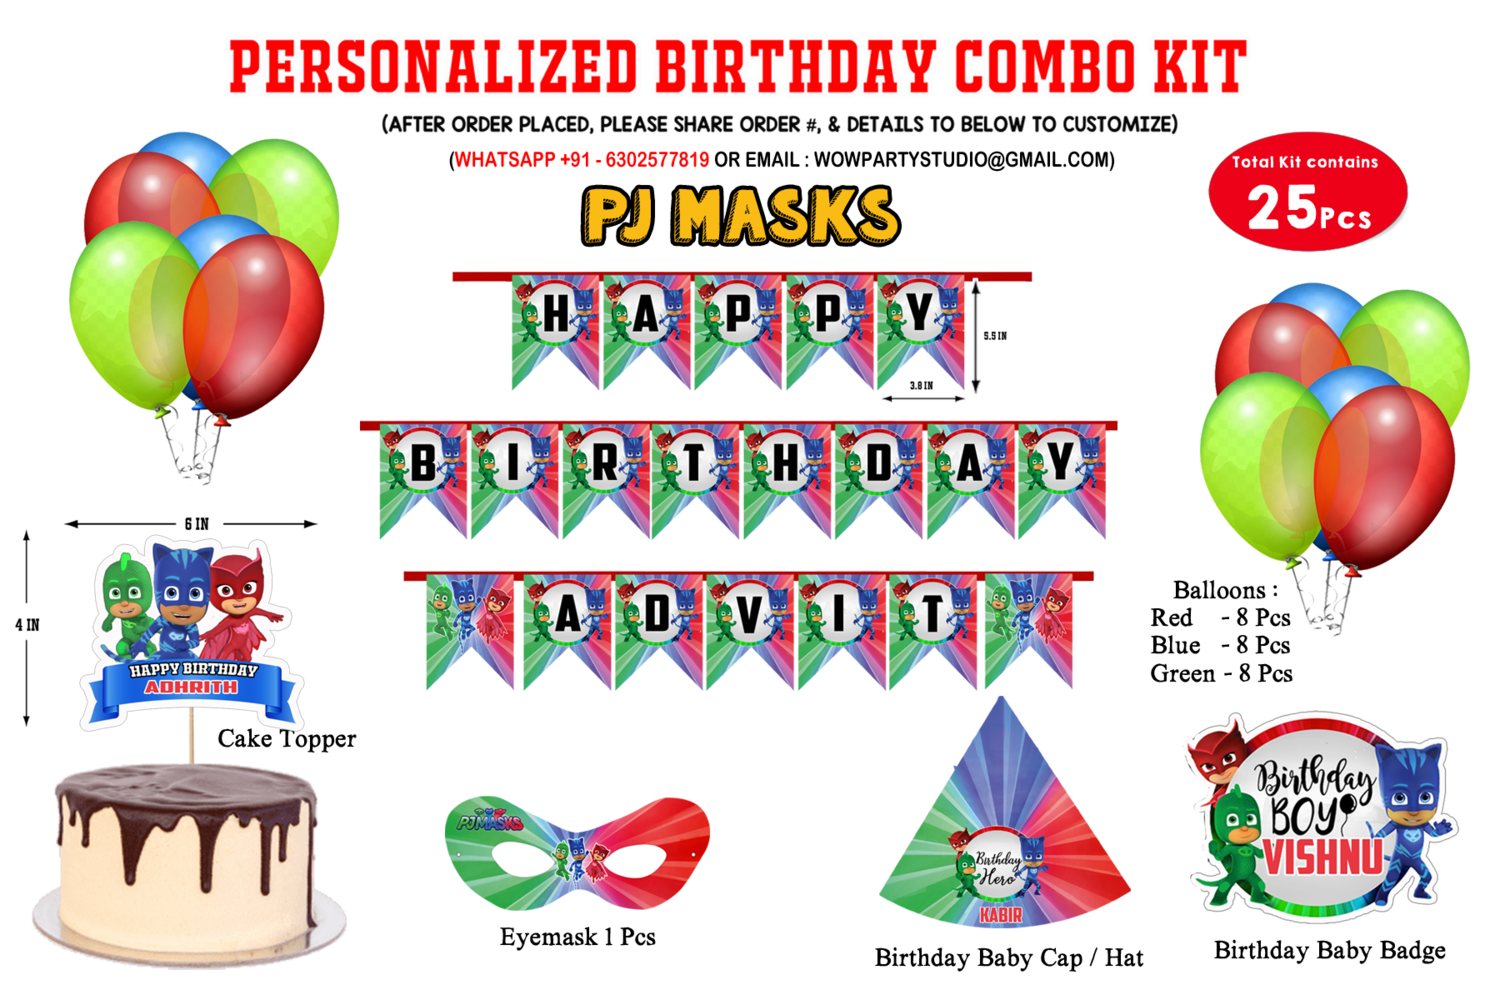 PJ Masks Theme - Combo Kit 25Pcs